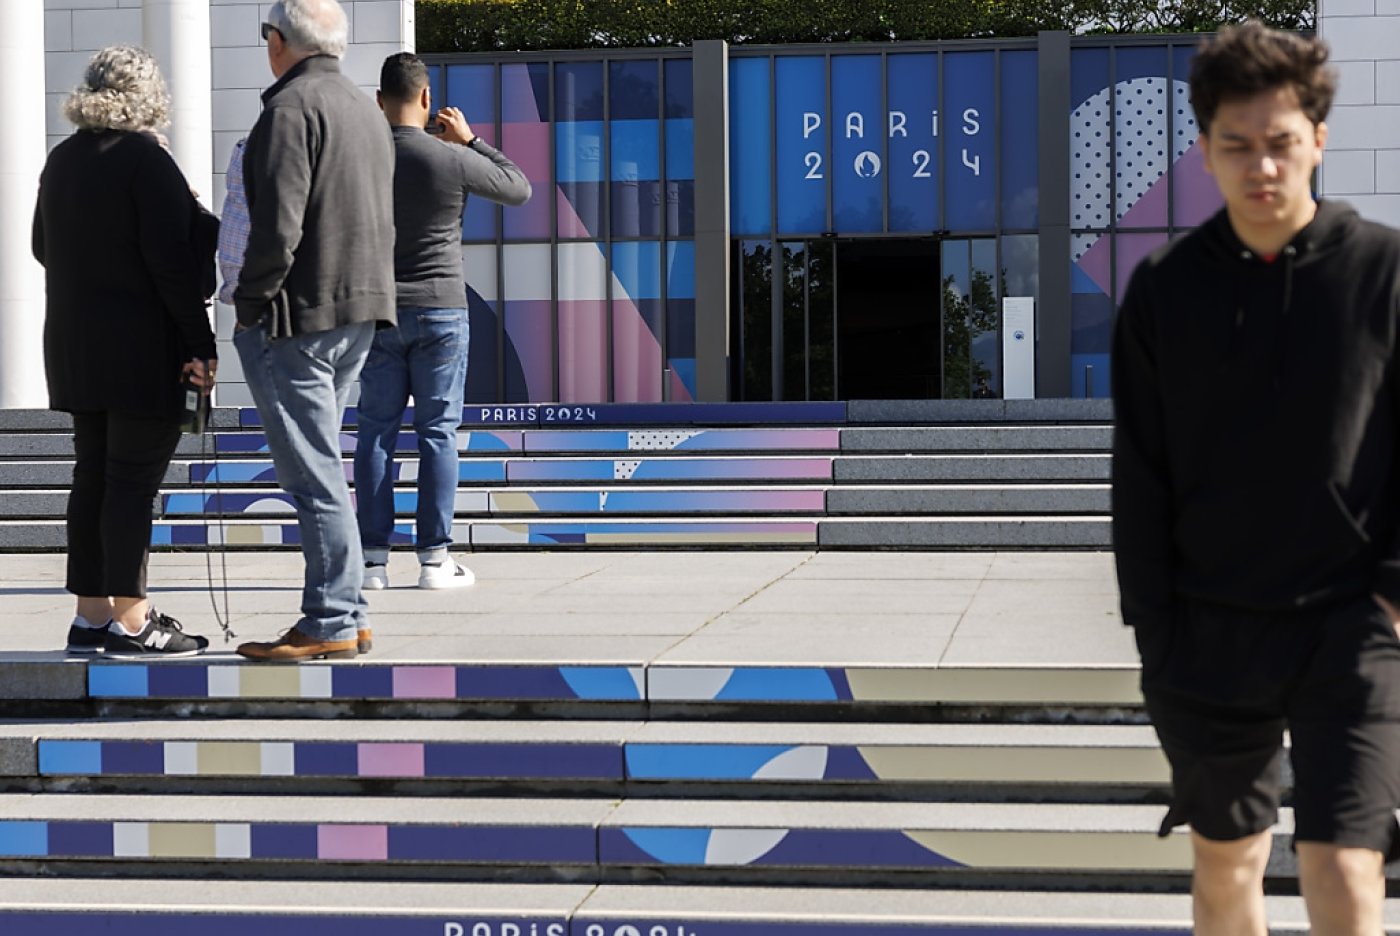 Le Musée olympique à Lausanne revêt les couleurs des Jeux olympiques de Paris 2024 pour une exposition spéciale dès le 25 mai. KEYSTONE